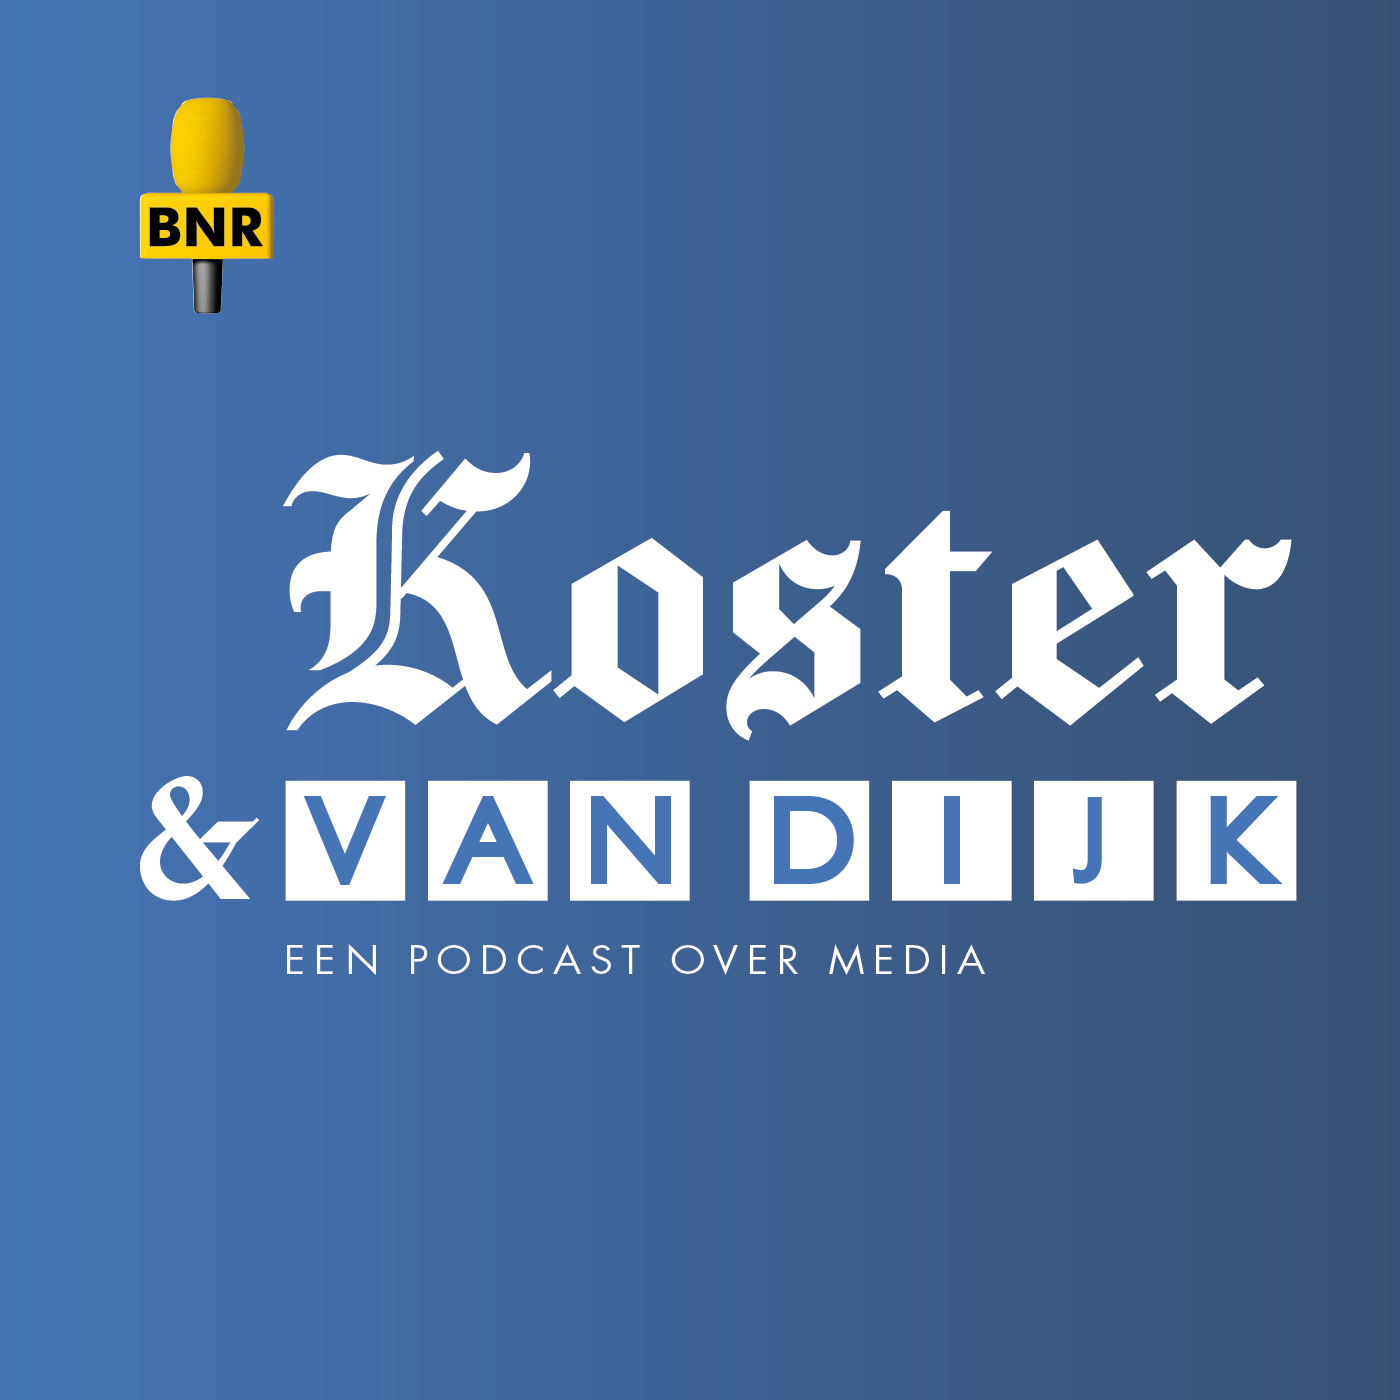 Koster & Van Dijk: Krijgen geheime email in handen, NPO wil onderzoek!